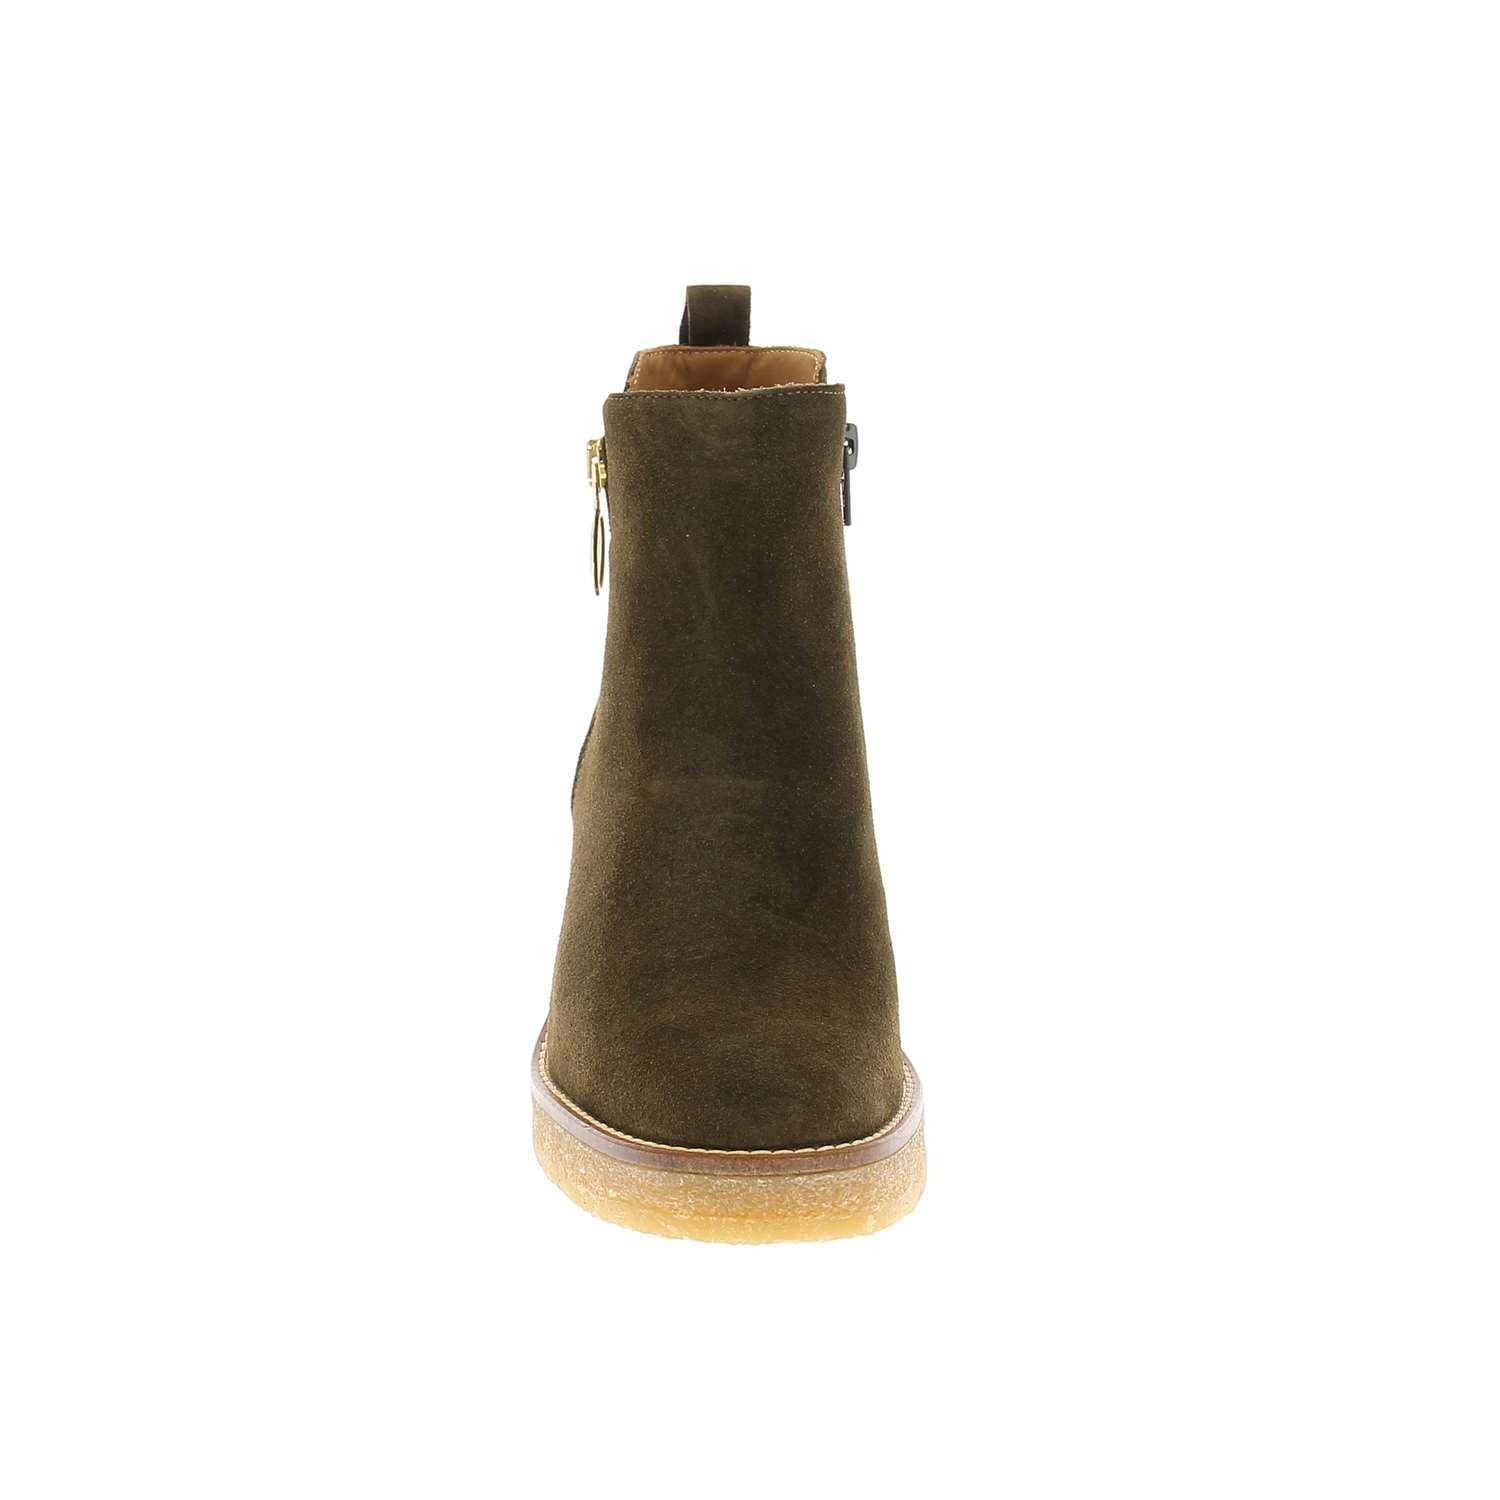 03 - ALLIM - ALPE - Boots et bottines - Croûte de cuir